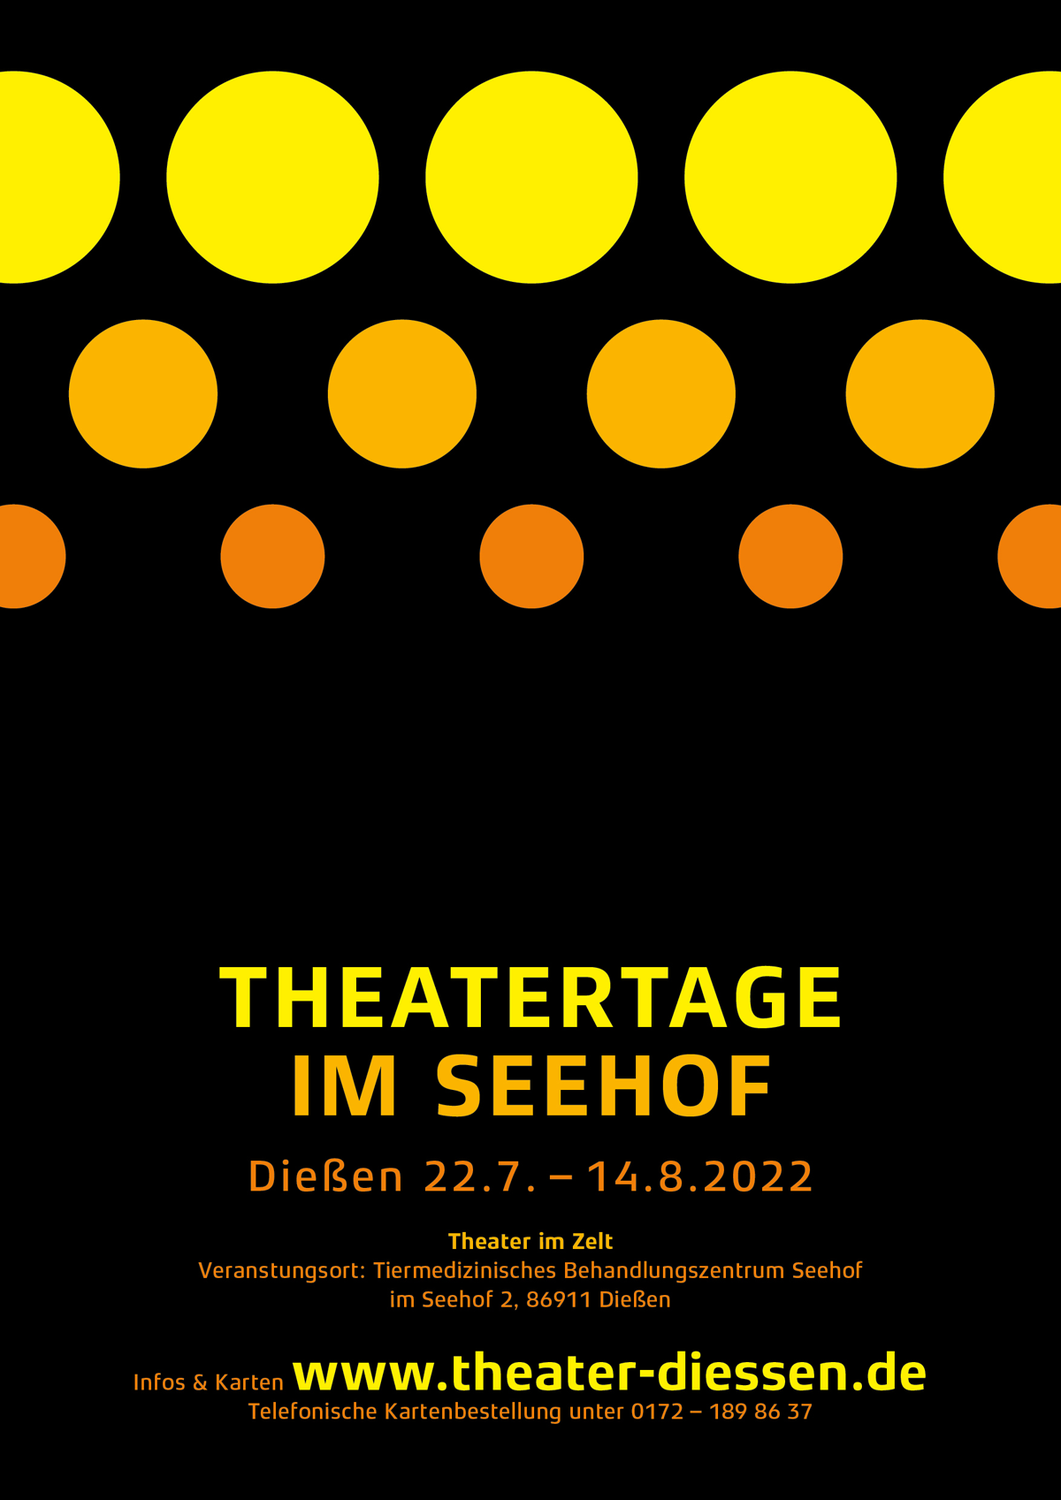 »Theatertage im Seehof« starten mit neuem Design